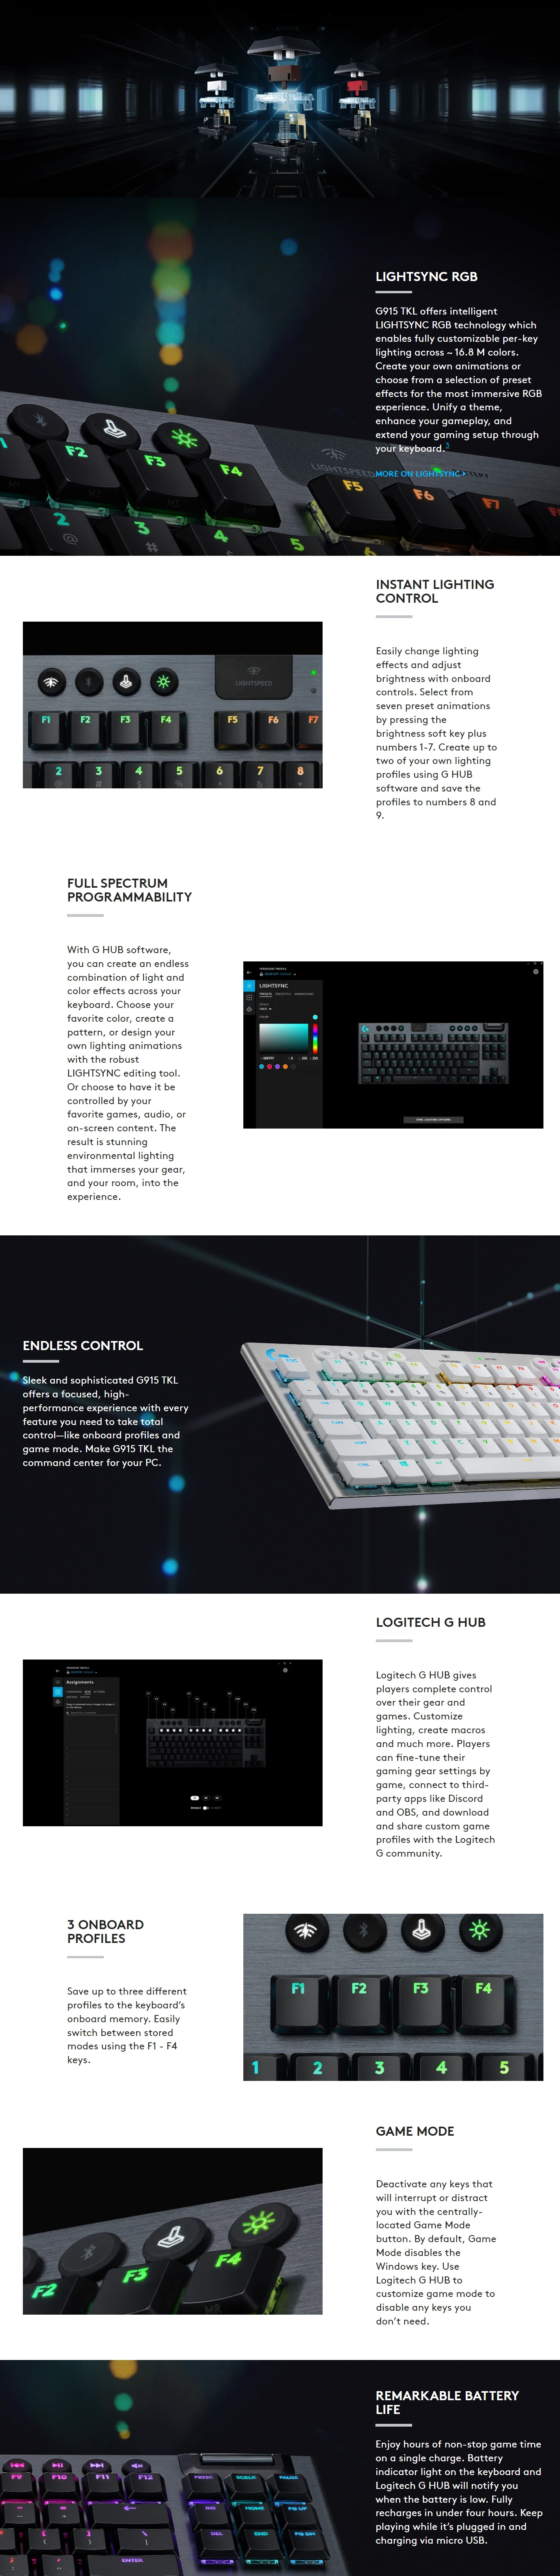 Keyboards-Logitech-G915-TKL-Lightspeed-Wireless-RGB-Mechanical-Gaming-Keyboard-Linear-920-009512-4